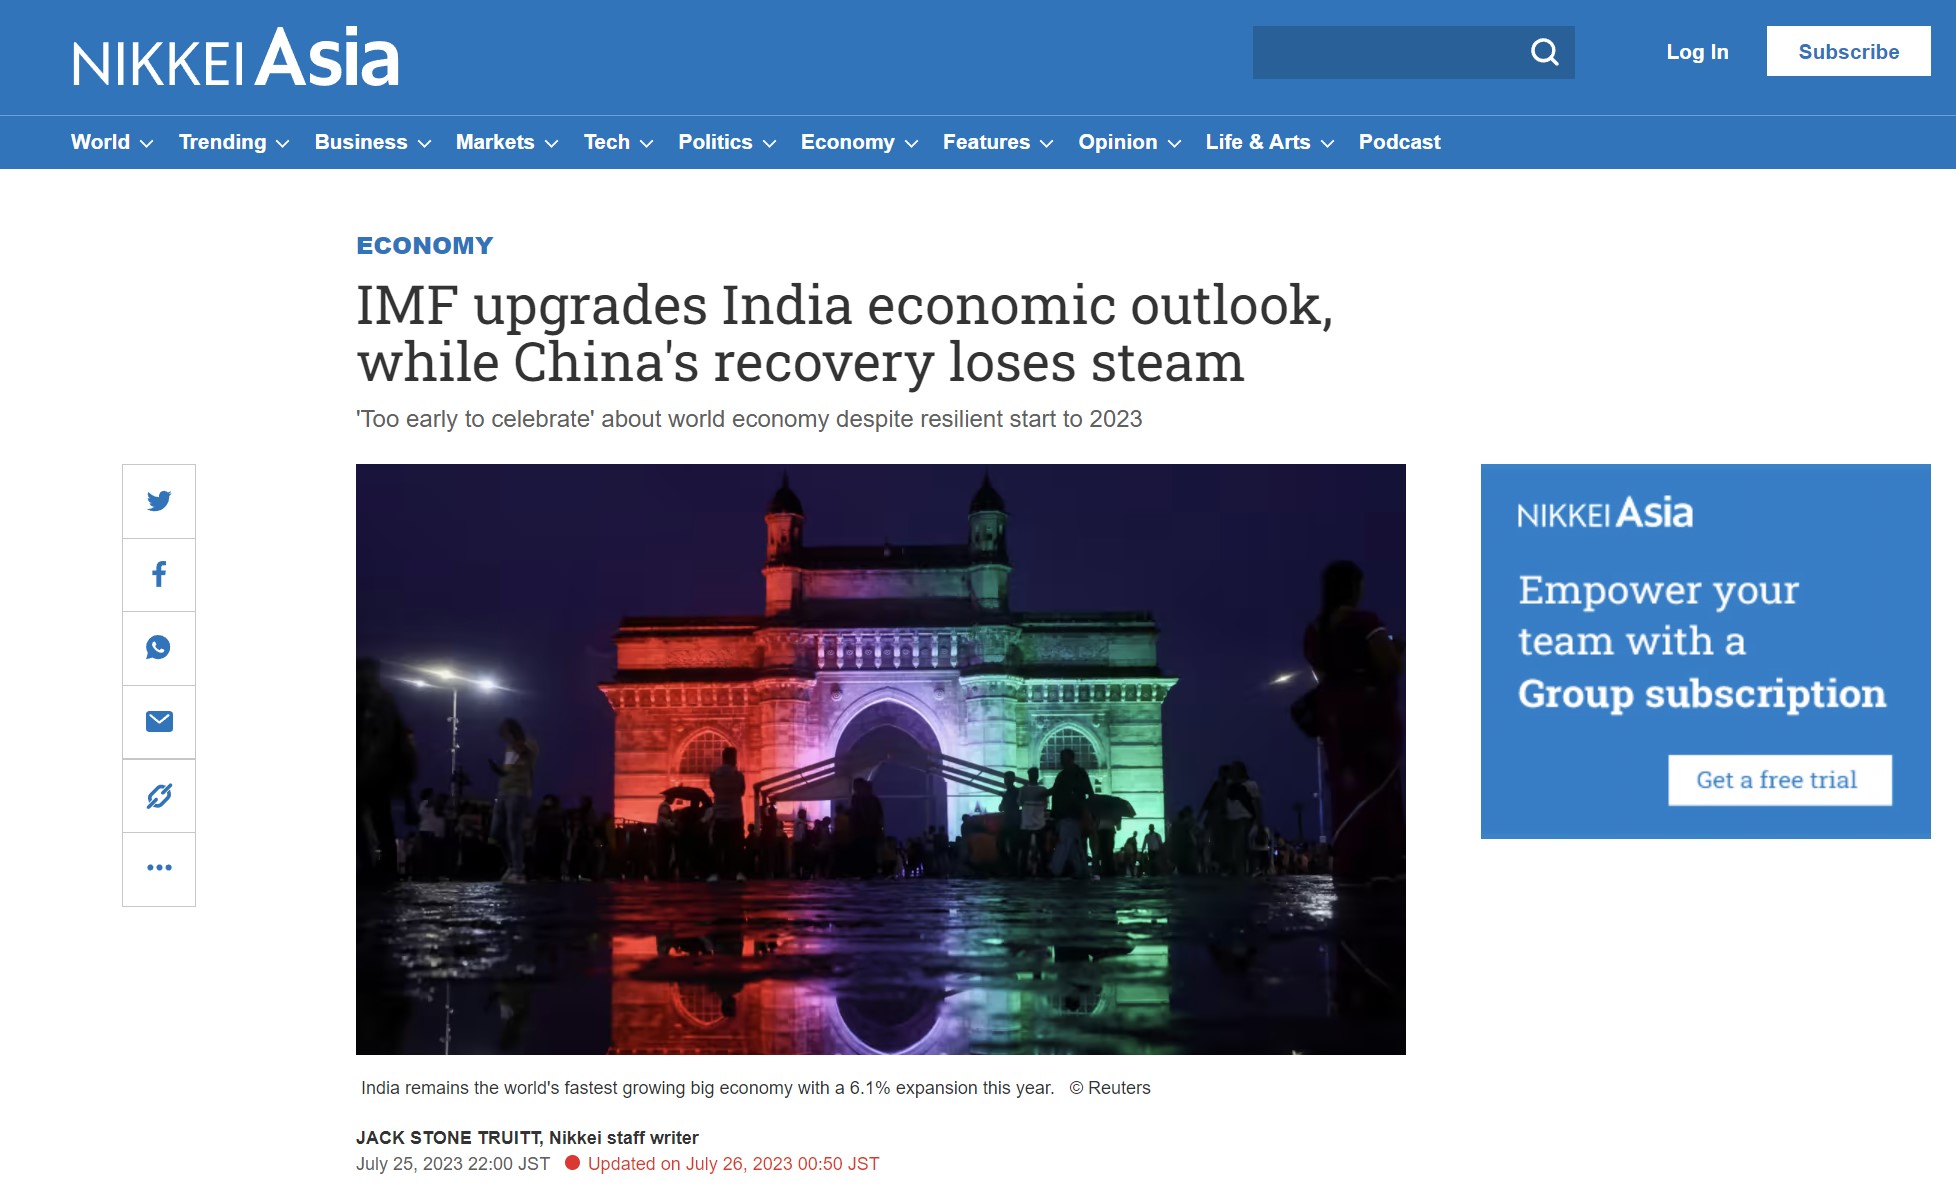 Nikkei Asia: Το ΔΝΤ αναβαθμίζει τις οικονομικές προοπτικές της Ινδίας, ενώ η ανάκαμψη της Κίνας χάνει τη δυναμική της